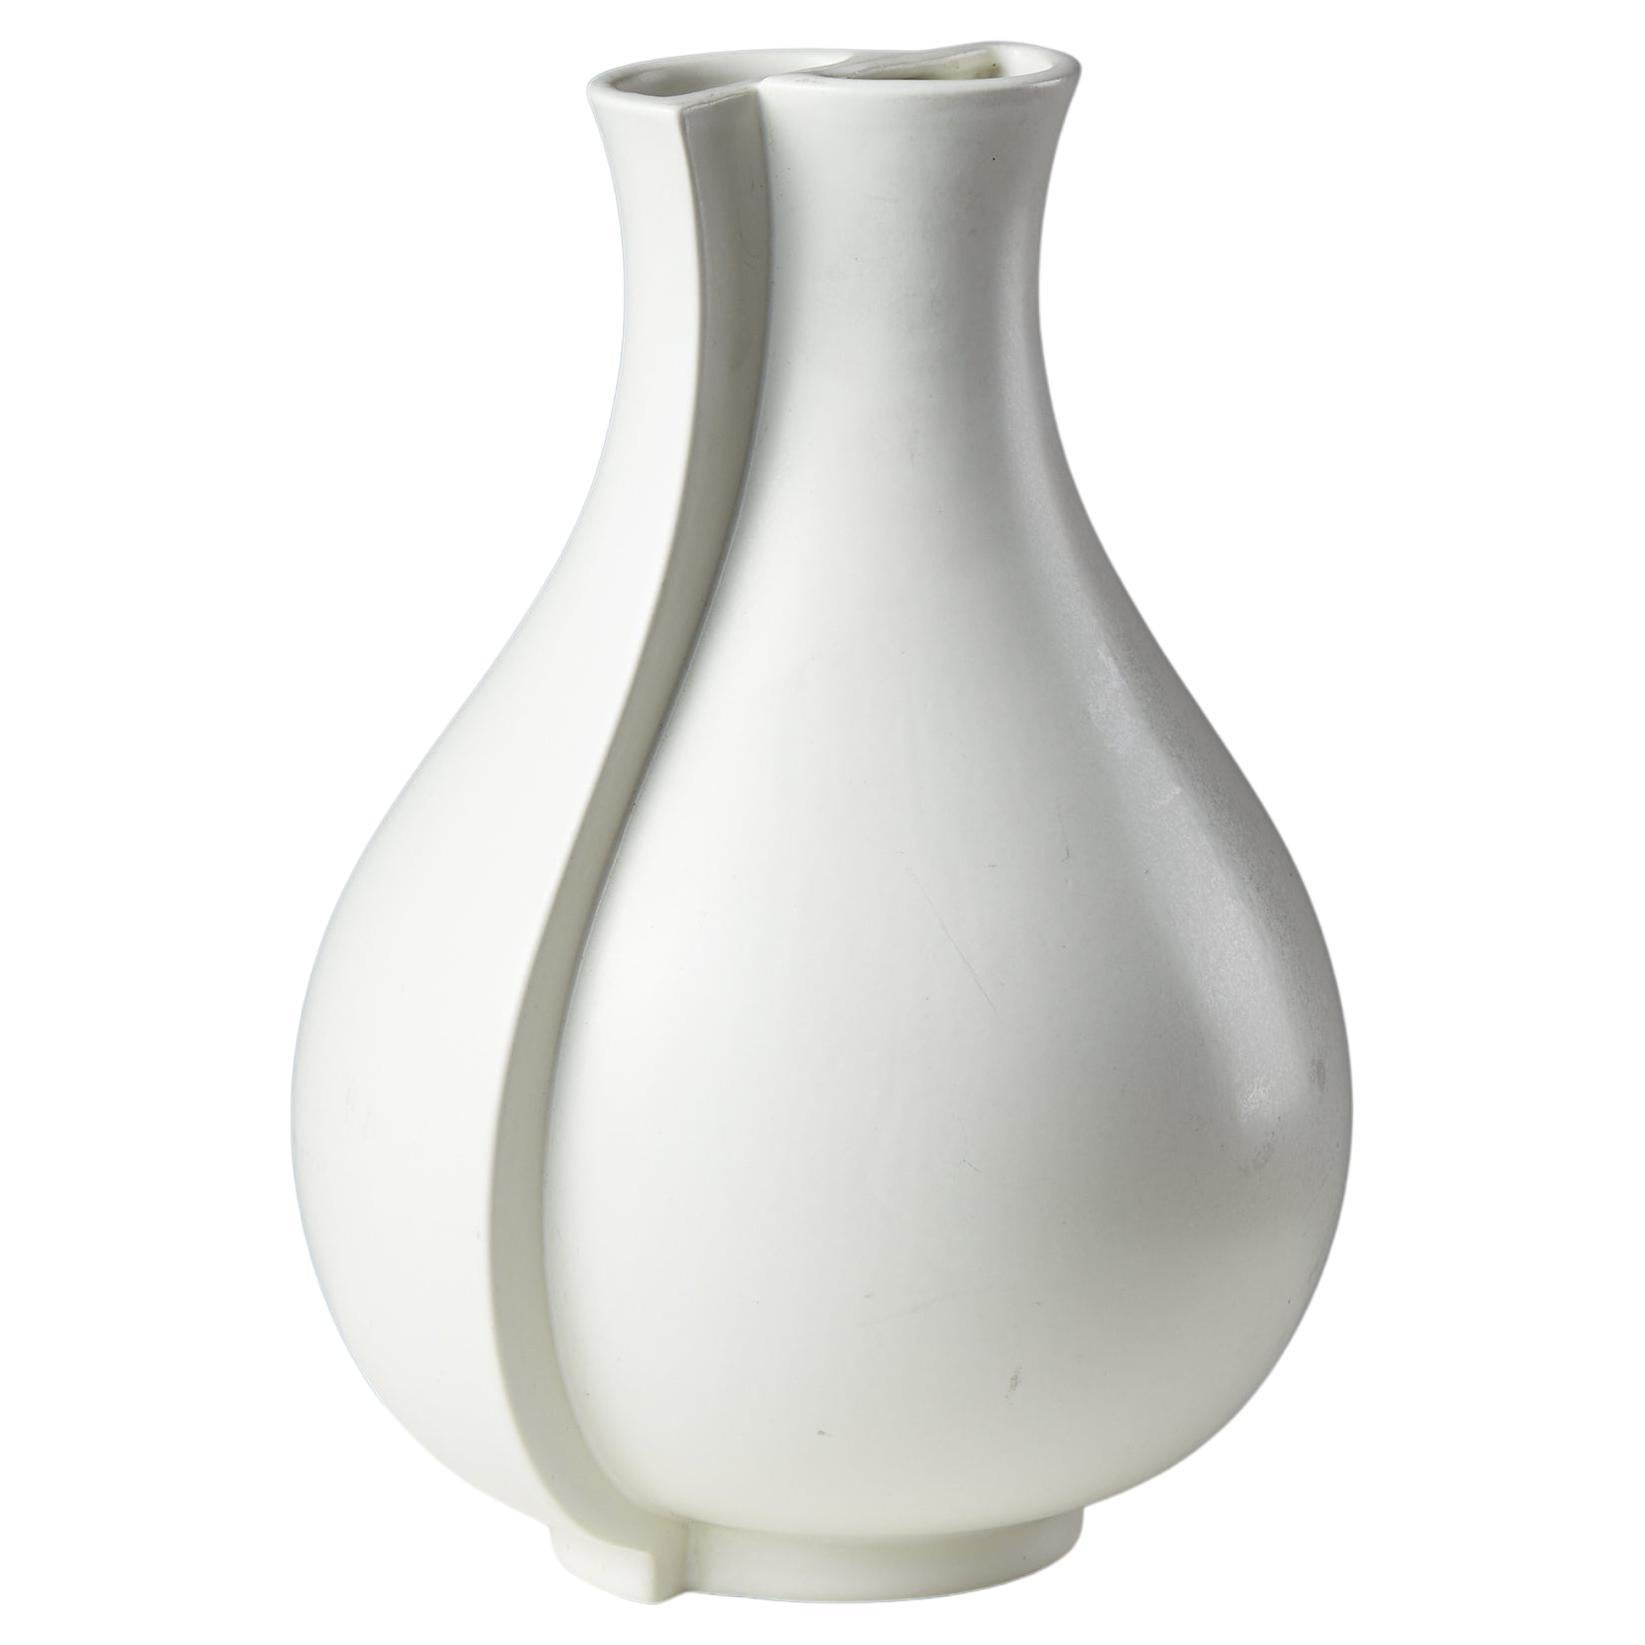 Vase “Surrea” Designed by Wilhem Kåge for Gustavsberg, Sweden, 1950s